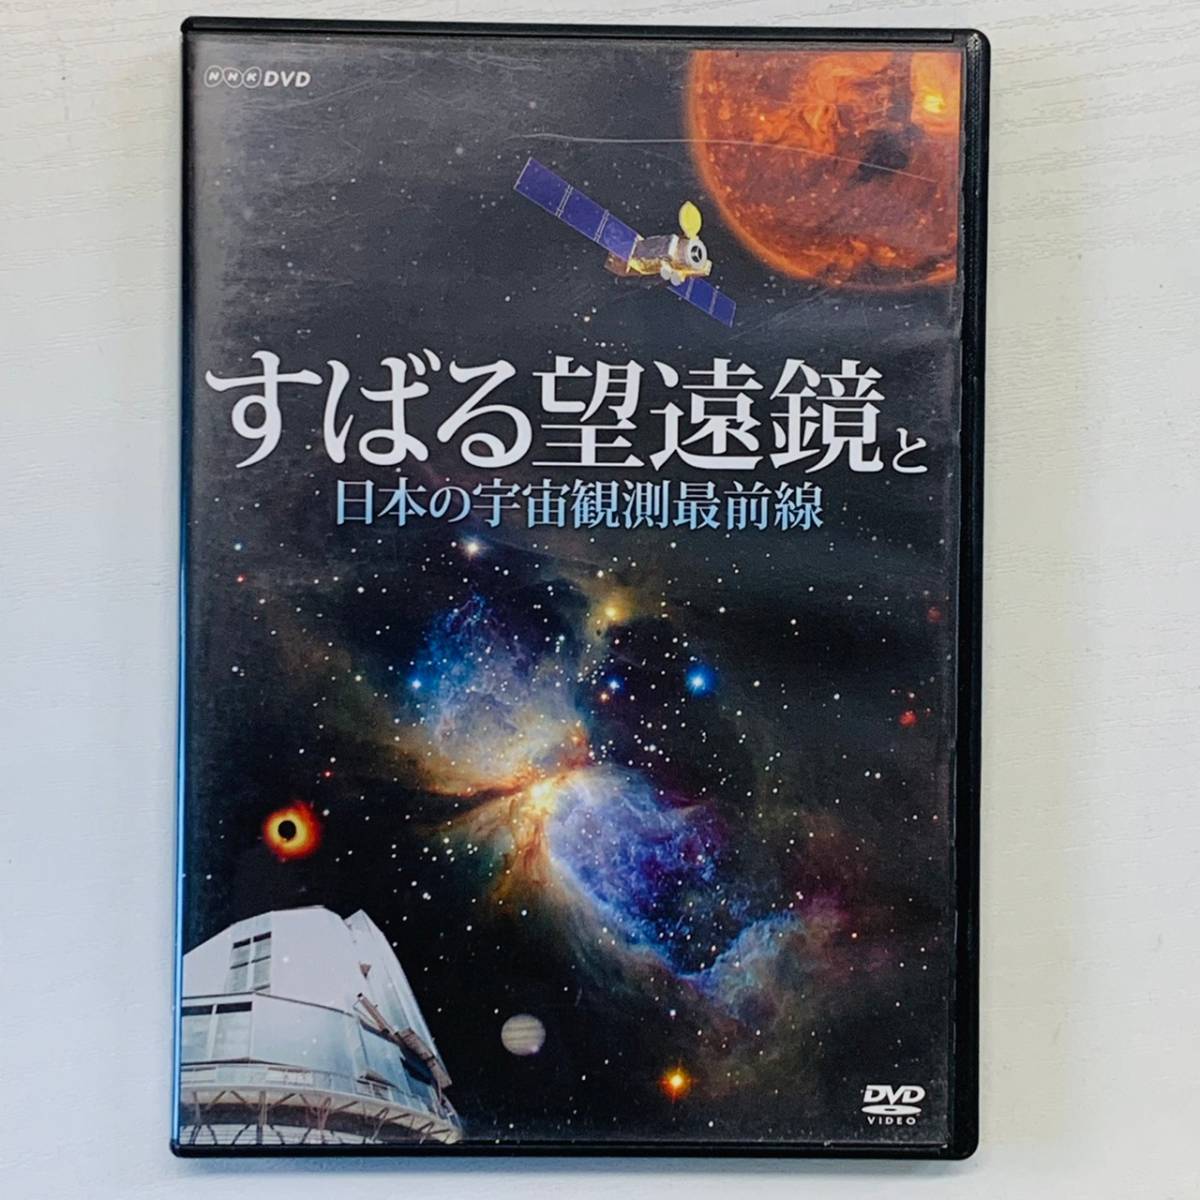 すばる望遠鏡と日本の宇宙観測最前線 DVD VIDEO TNA18_画像1